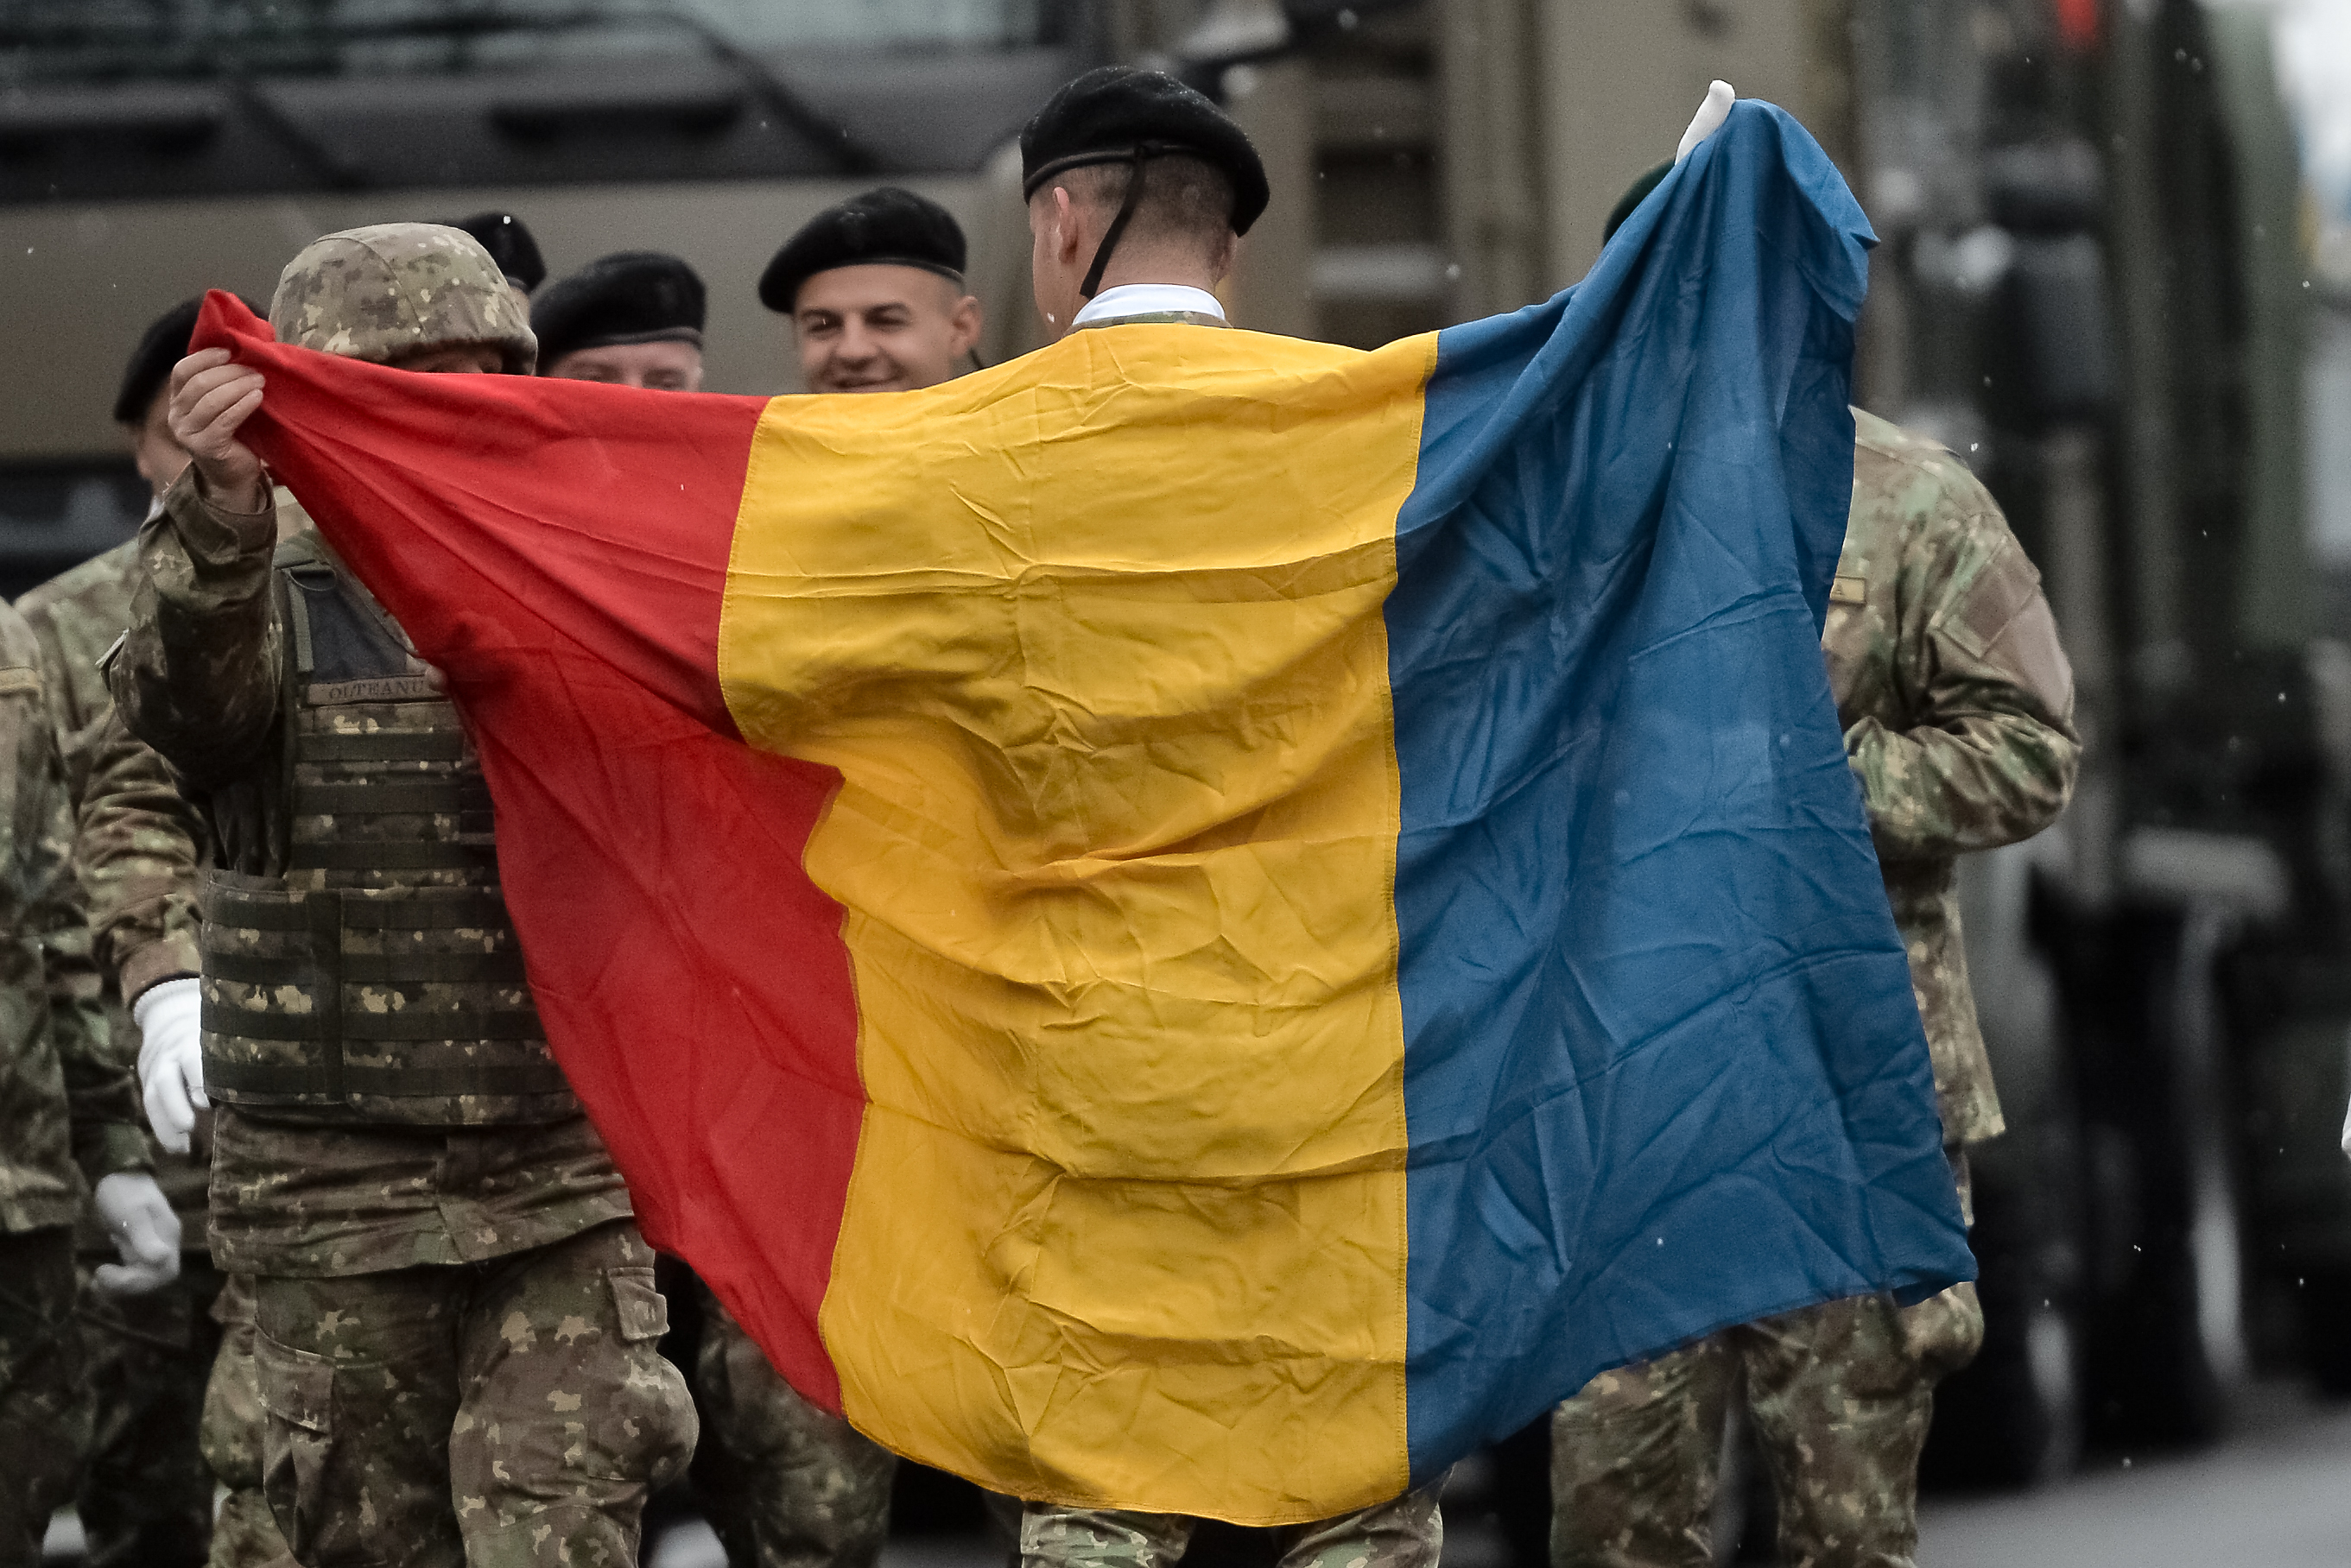 România are o nouă sărbătoare naţională. Preşedintele Klaus Iohannis a promulgat joi legea